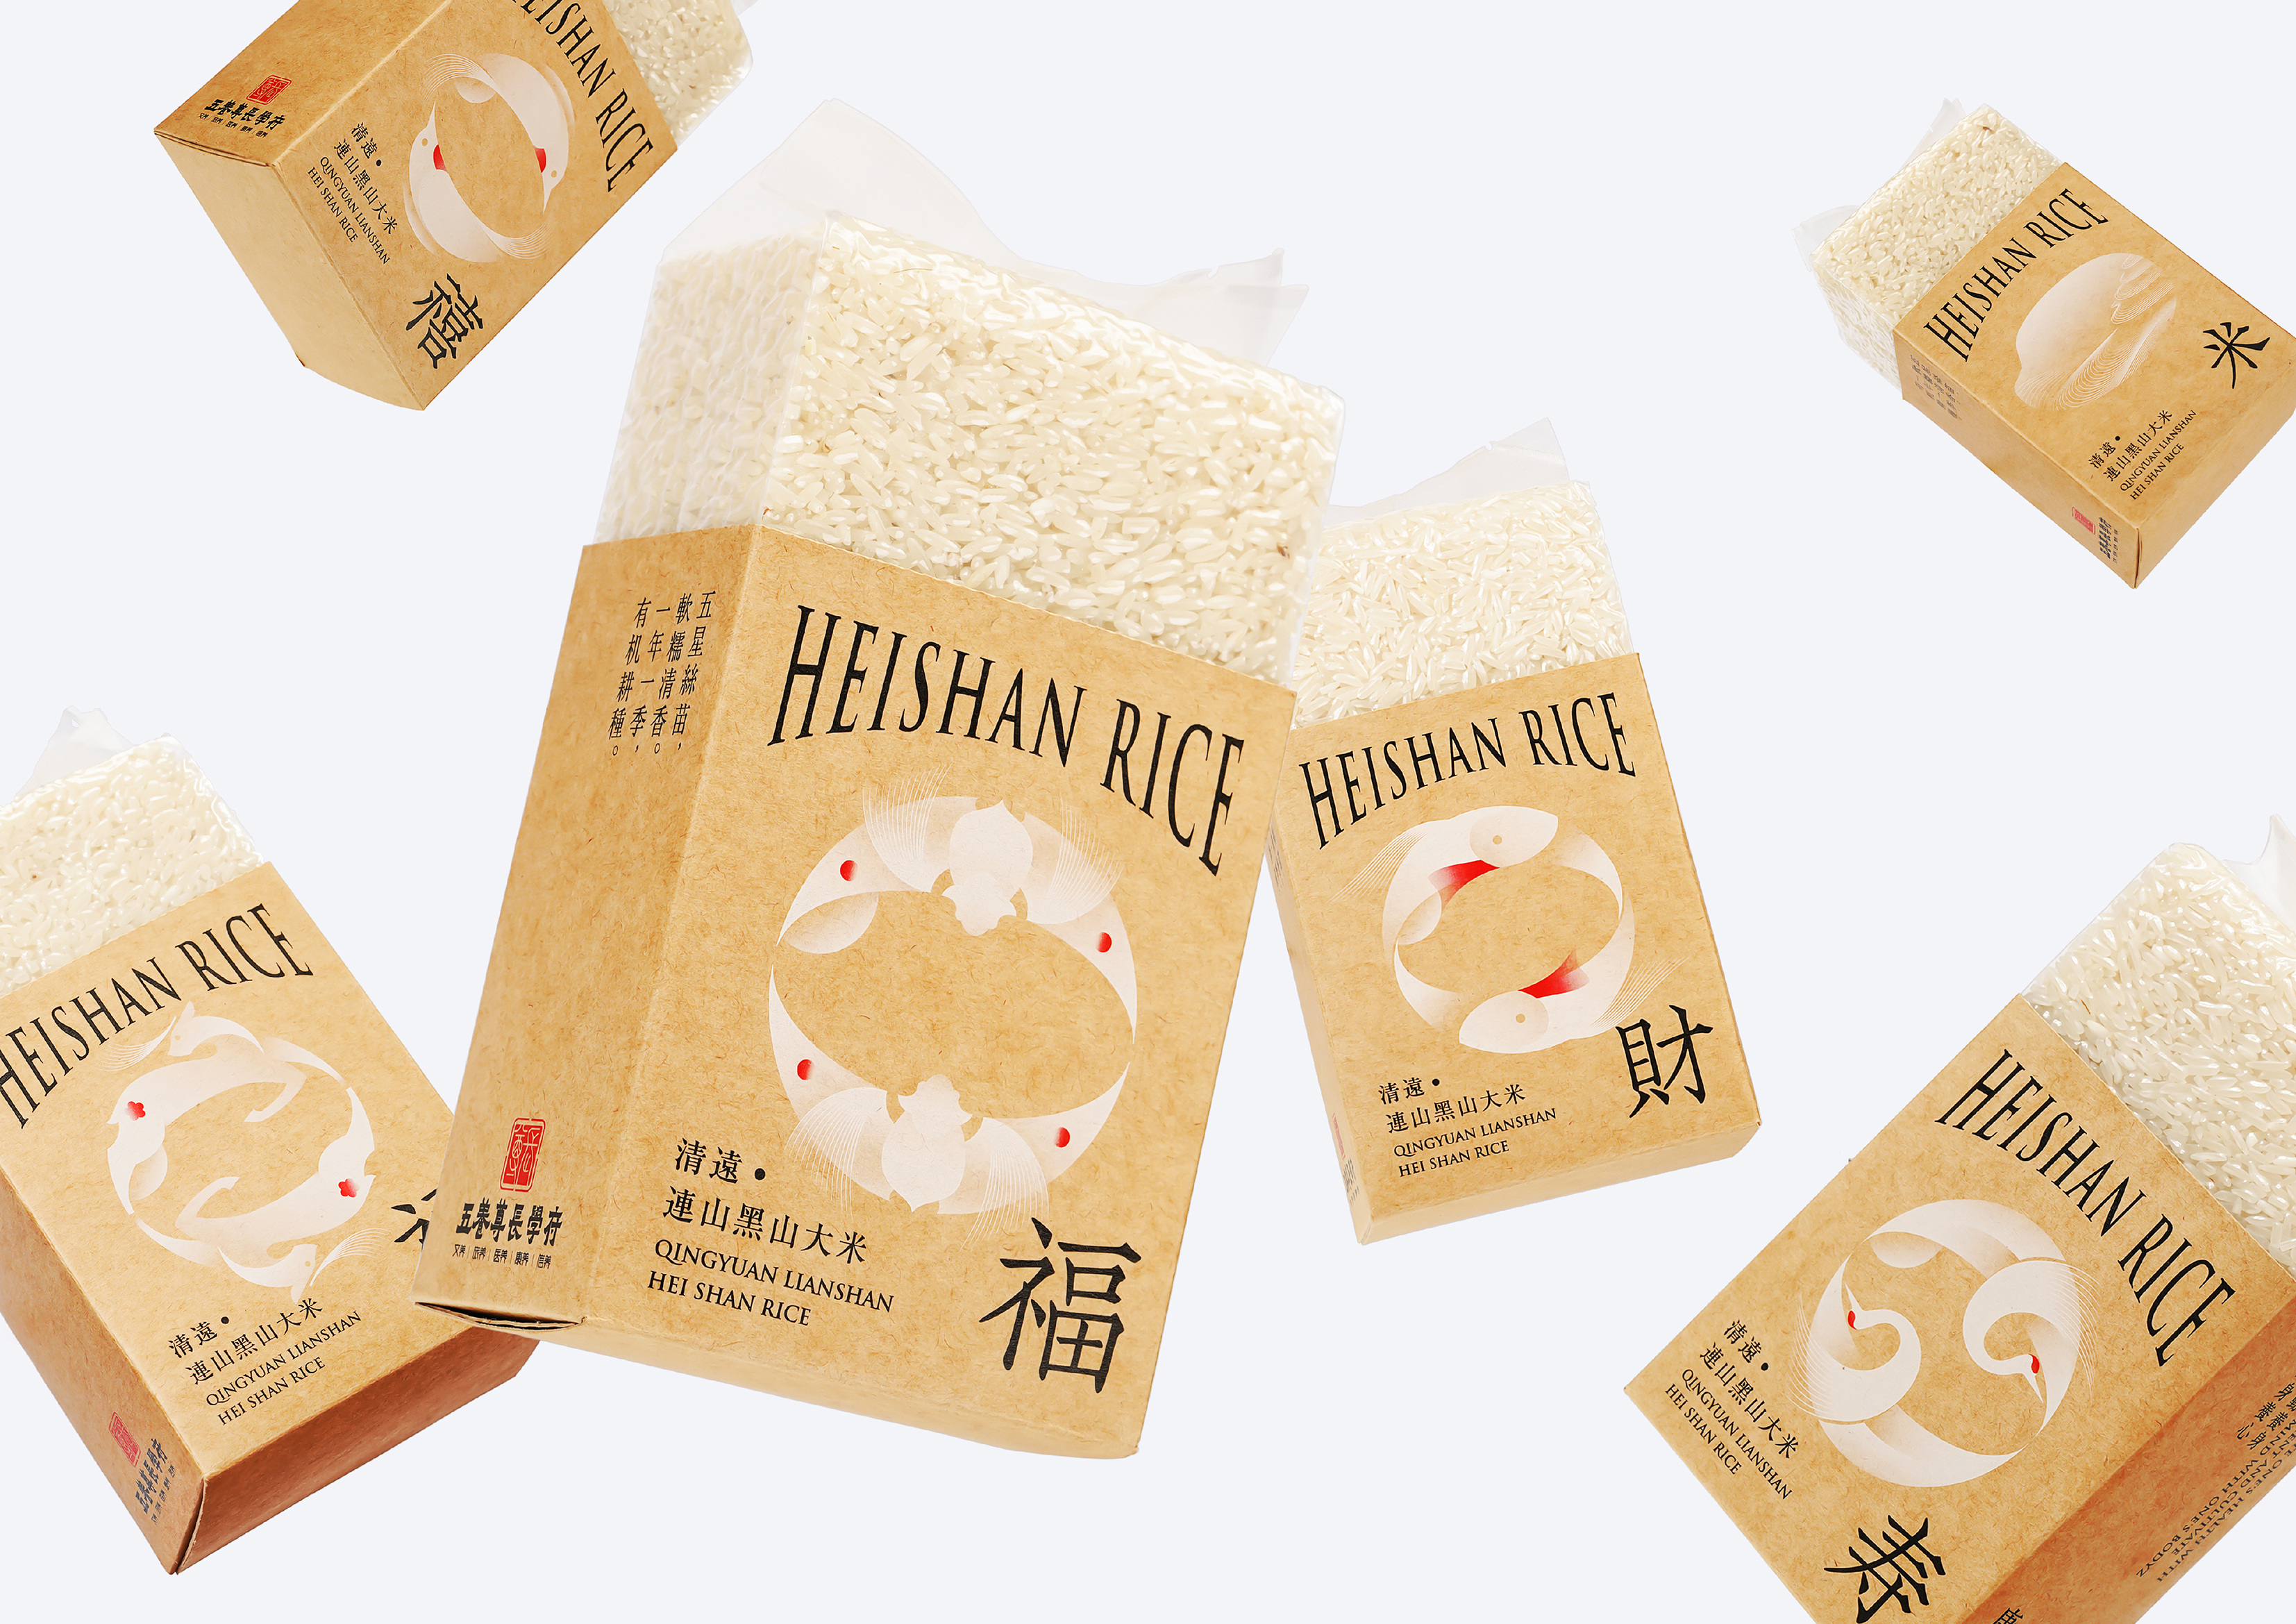 Qingyuan Lianshan Heishan Rice